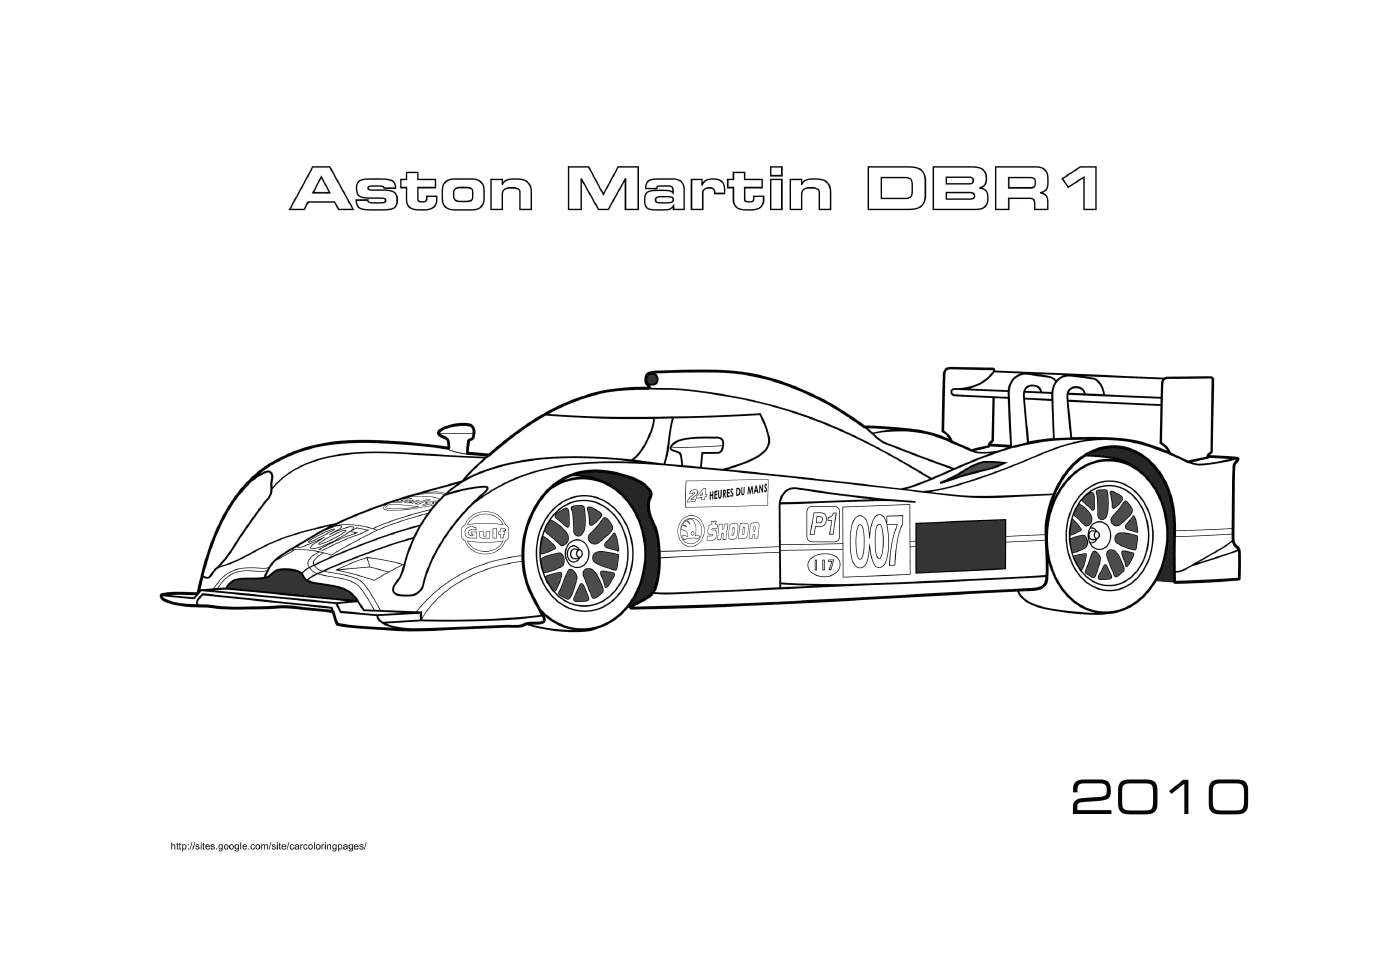  Astton مارتن DBR1 2010, Druة 1 سيارة 